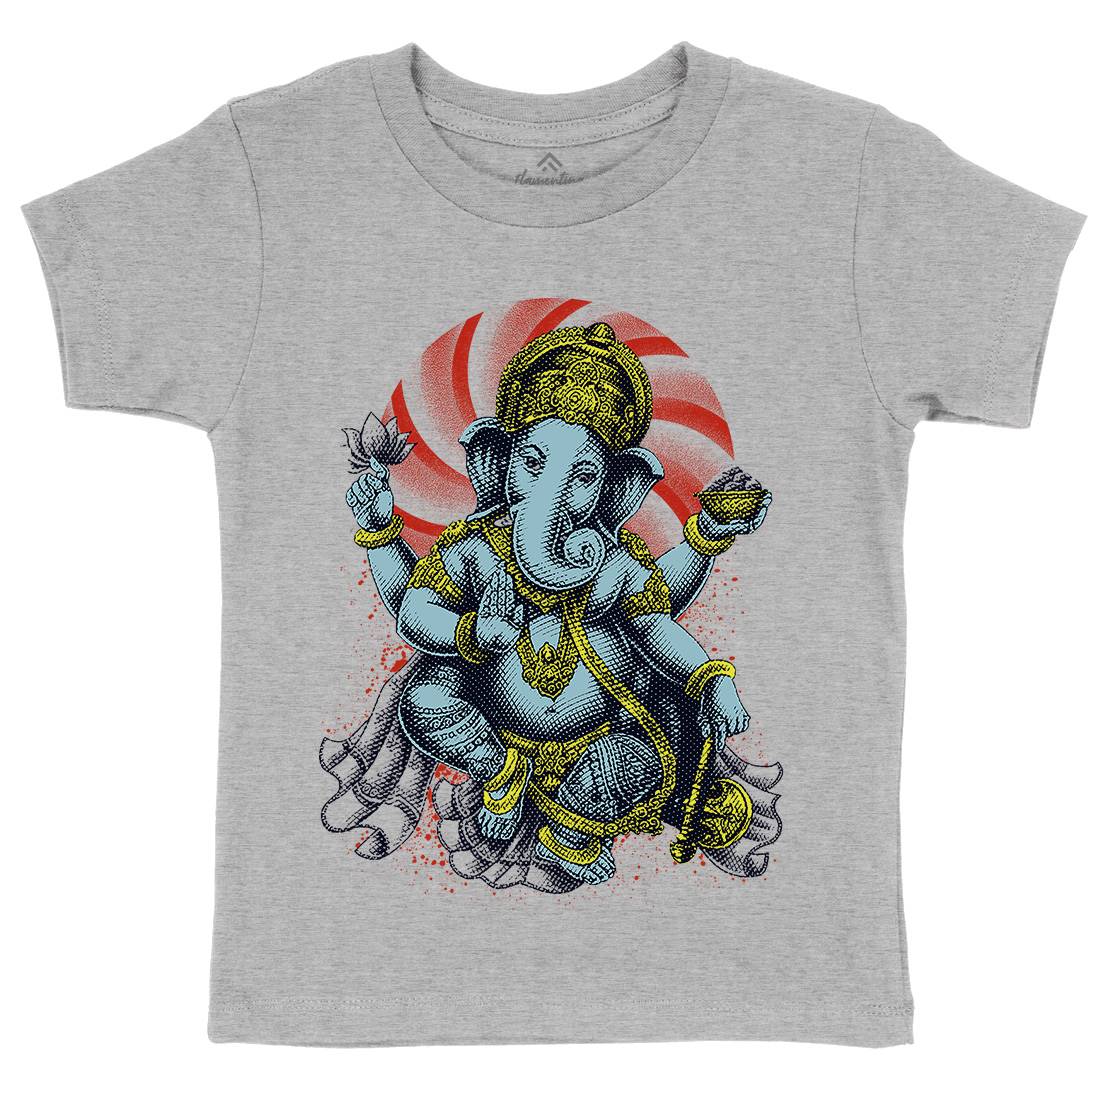 Hindu Goddess Kids Crew Neck T-Shirt Asian D043